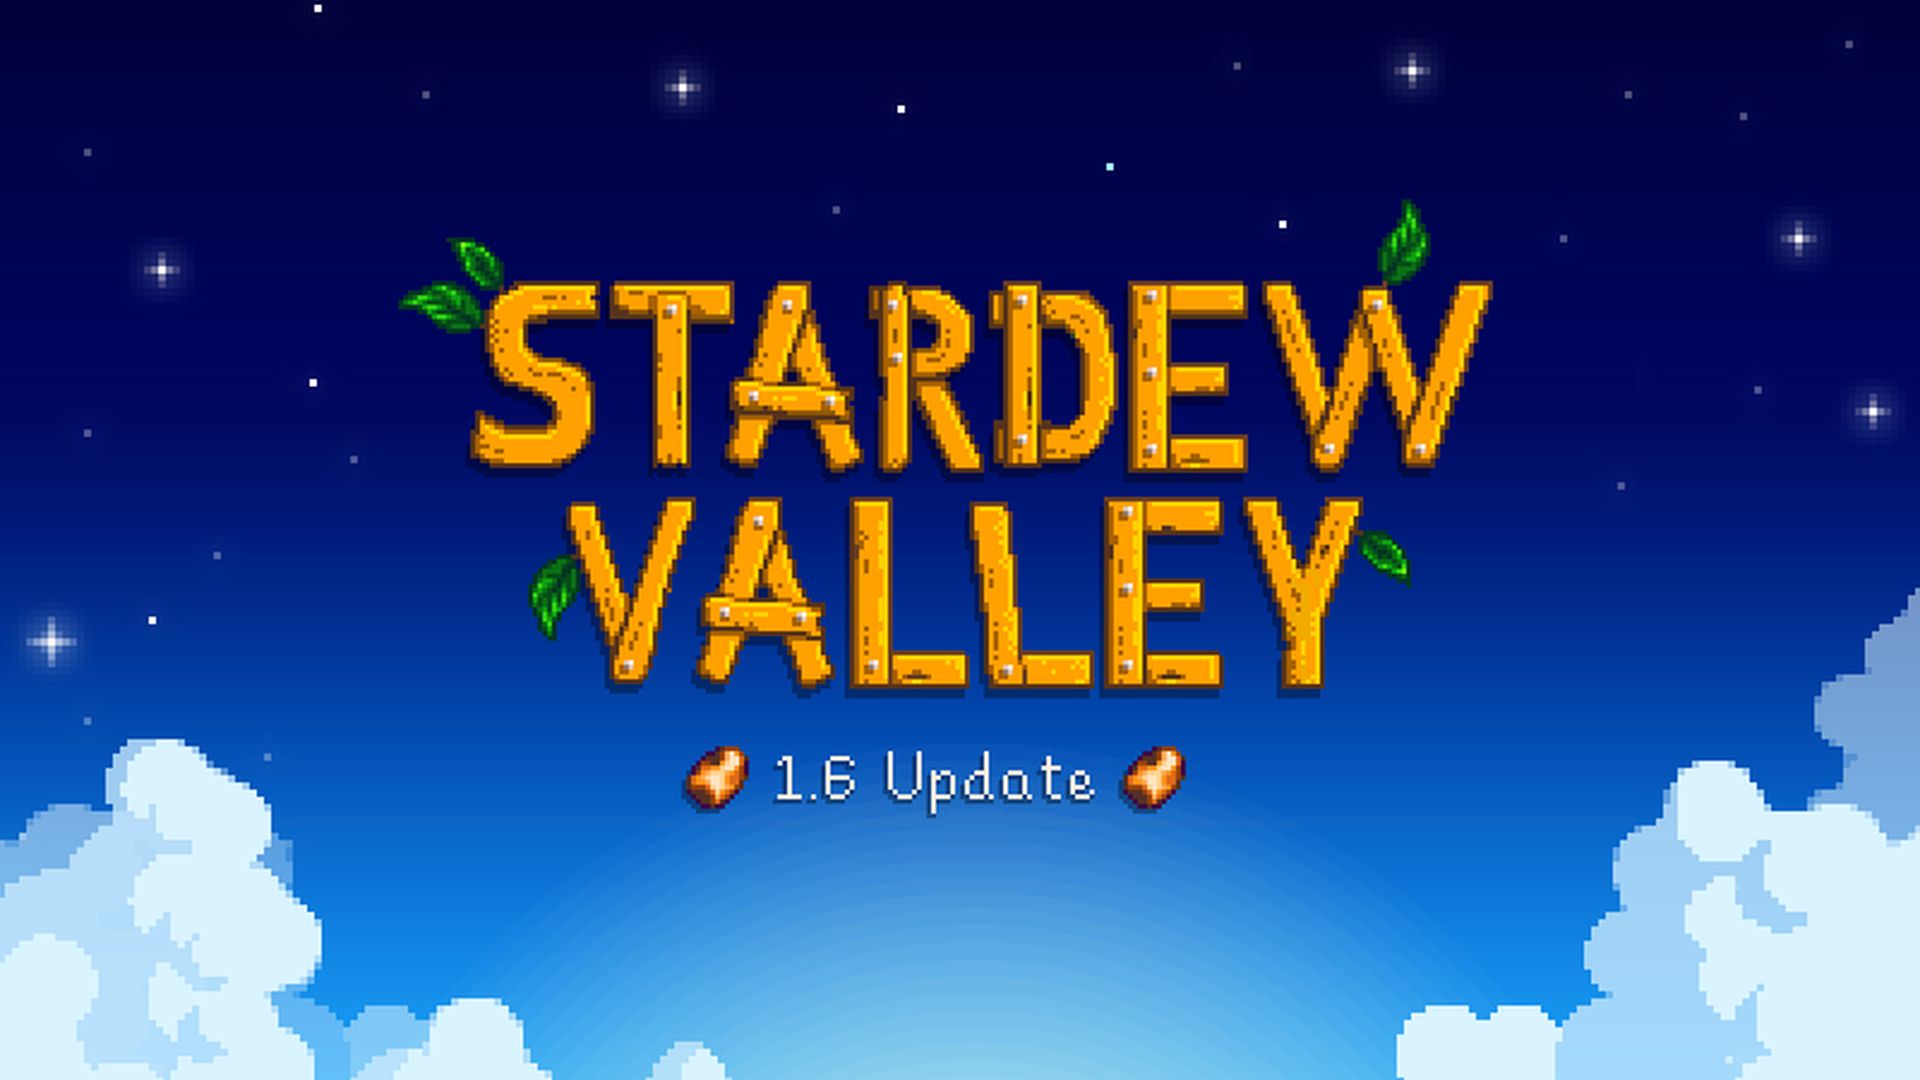 Stardew Valley 1.6 업데이트: 콘솔 플레이어는 언제 이 즐거움에 참여할 수 있나요?